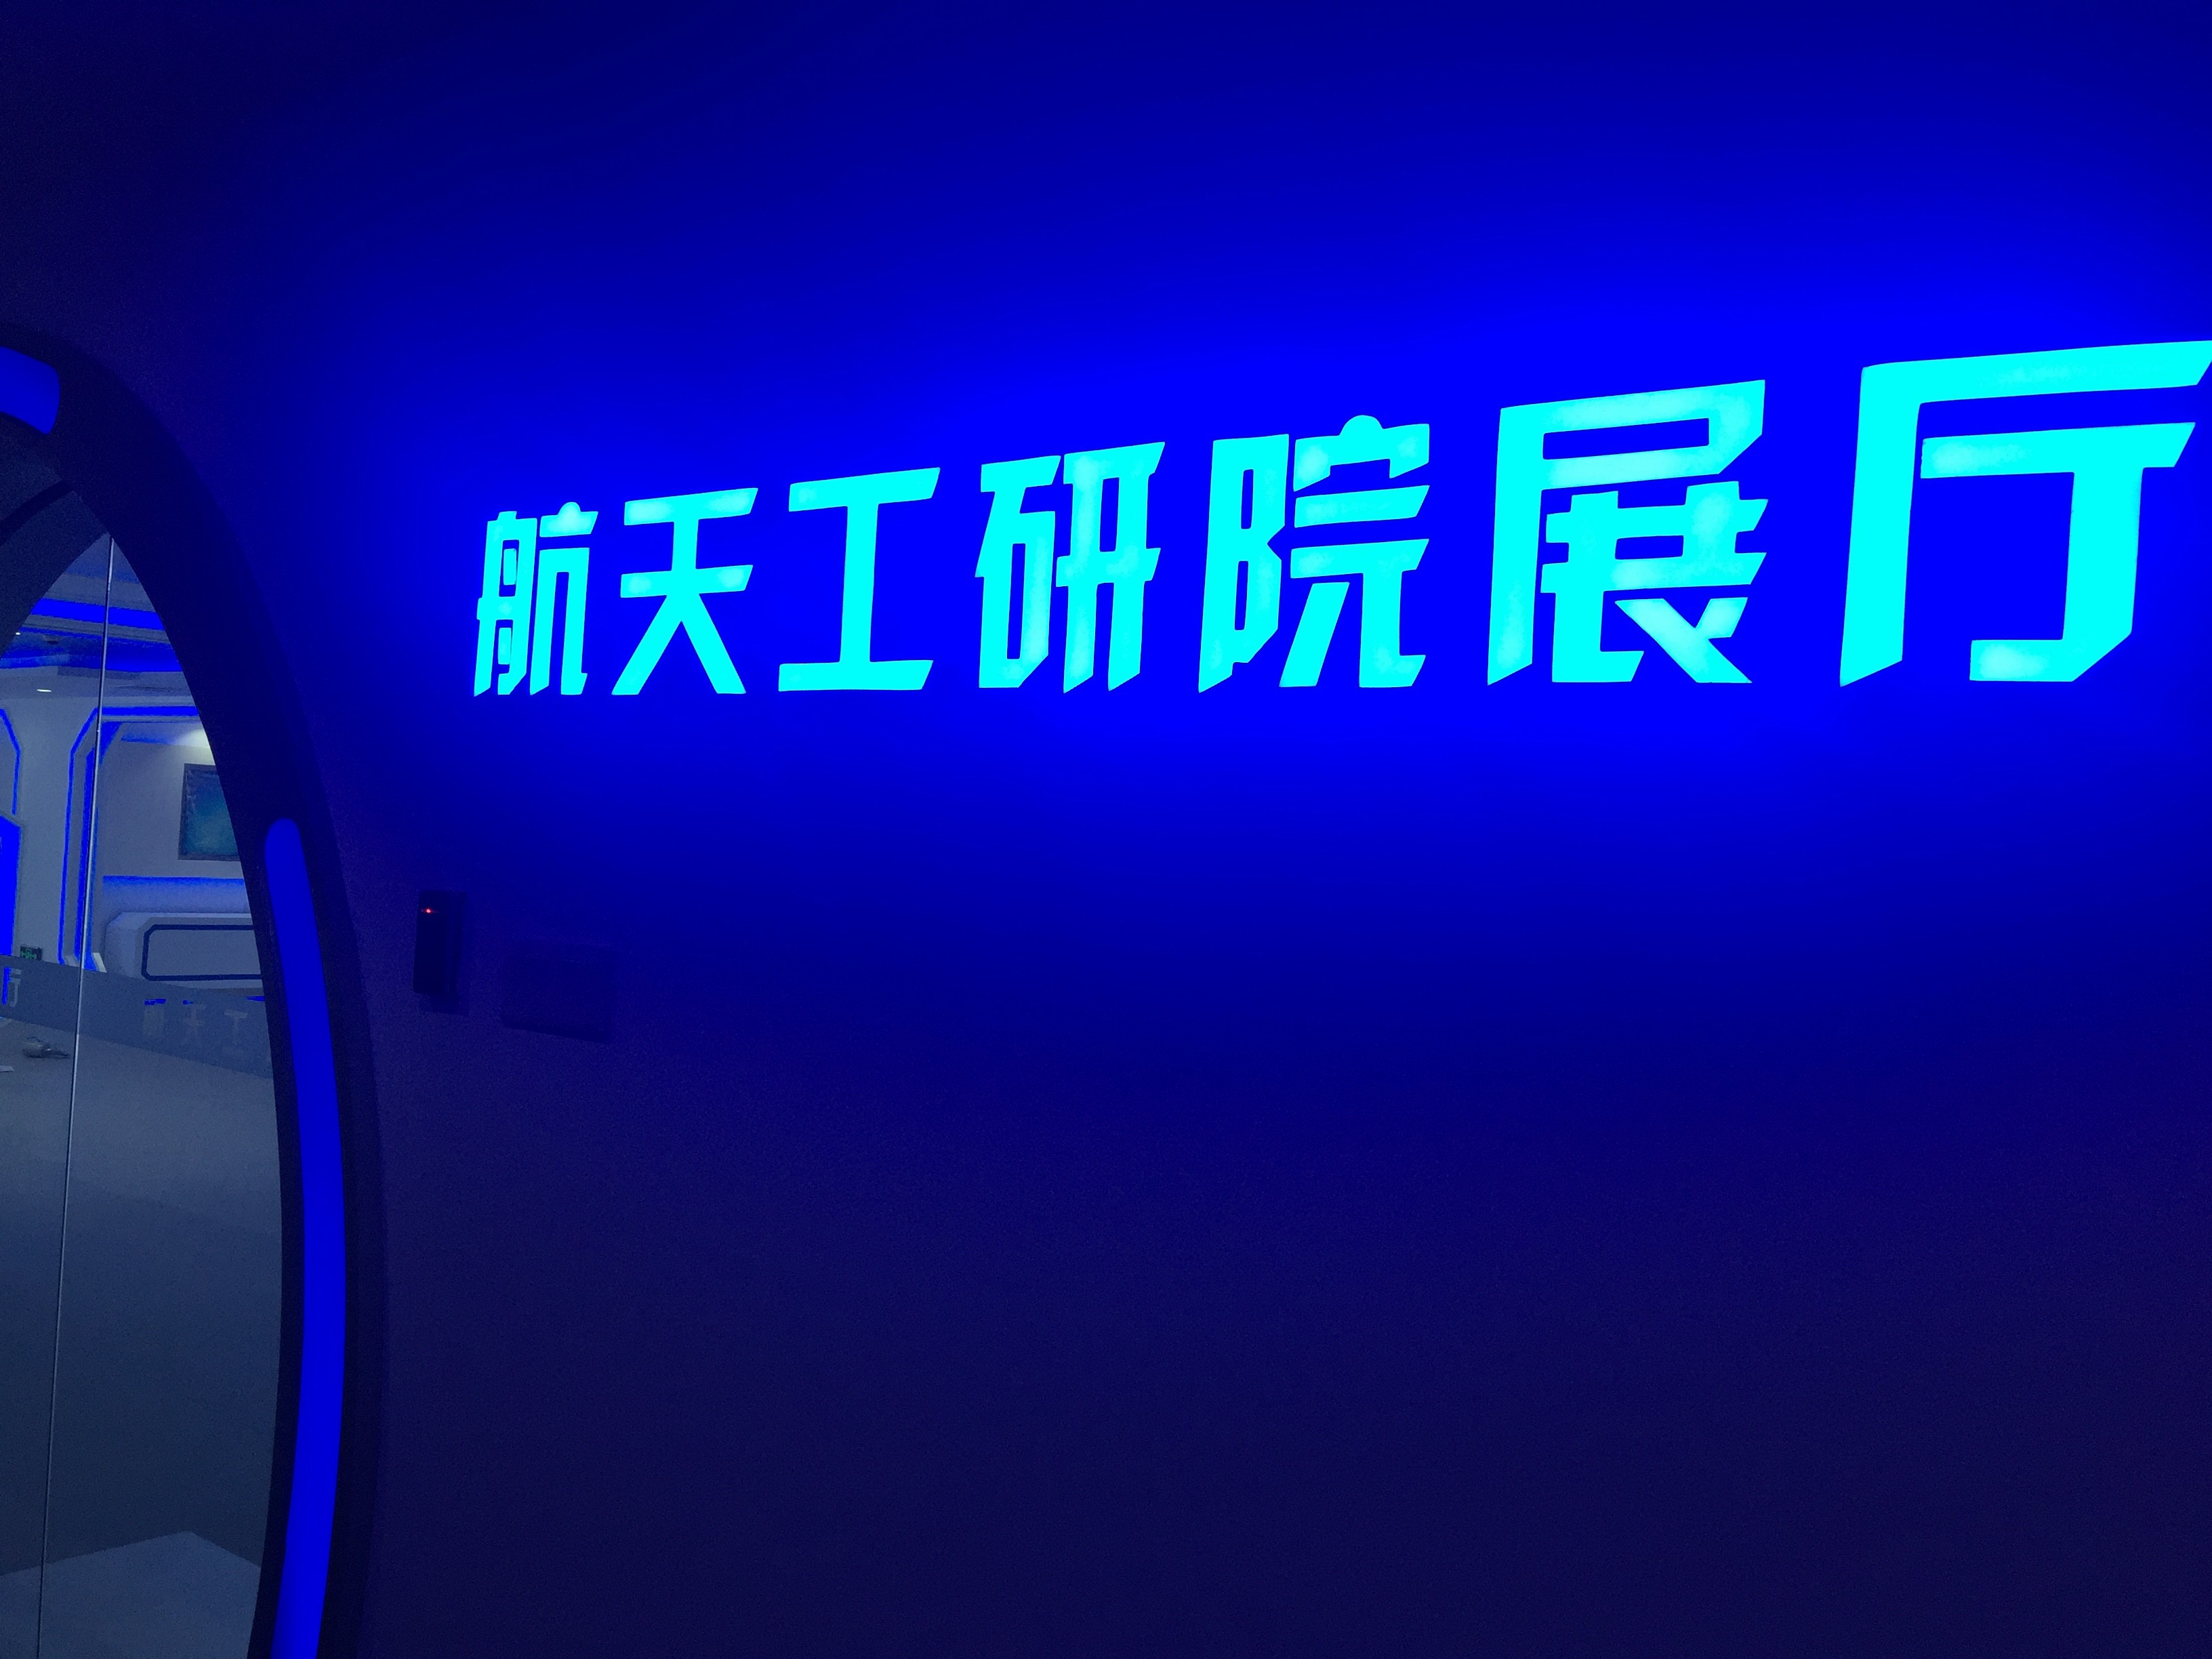 深圳南山航天工業技術研究院展廳